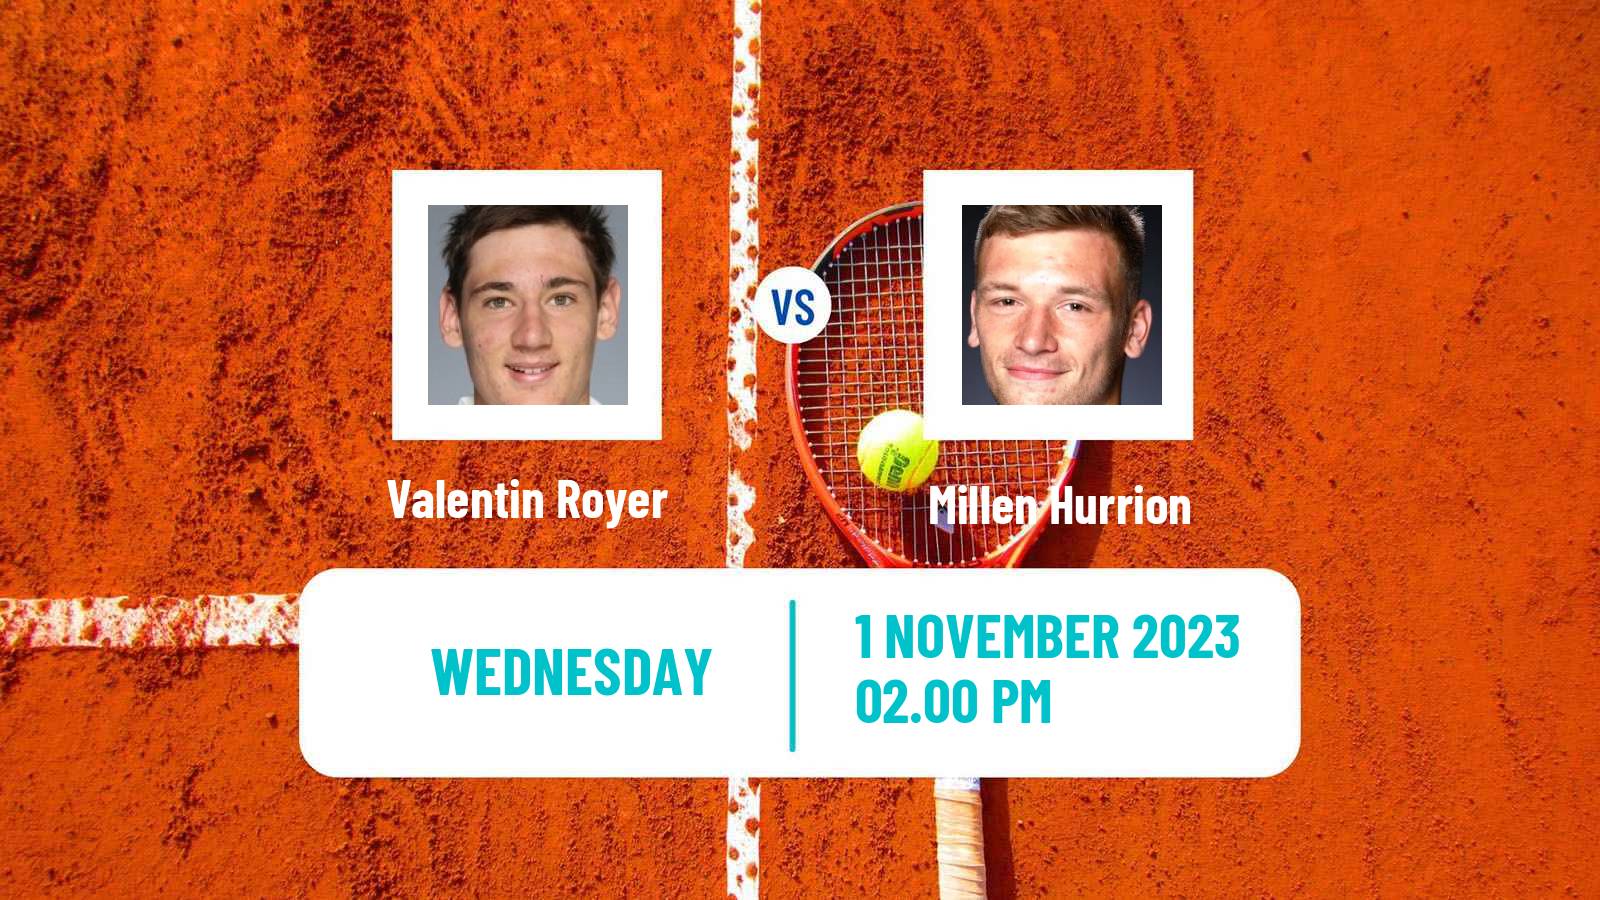 Tennis ITF M25 Sunderland 2 Men Valentin Royer - Millen Hurrion